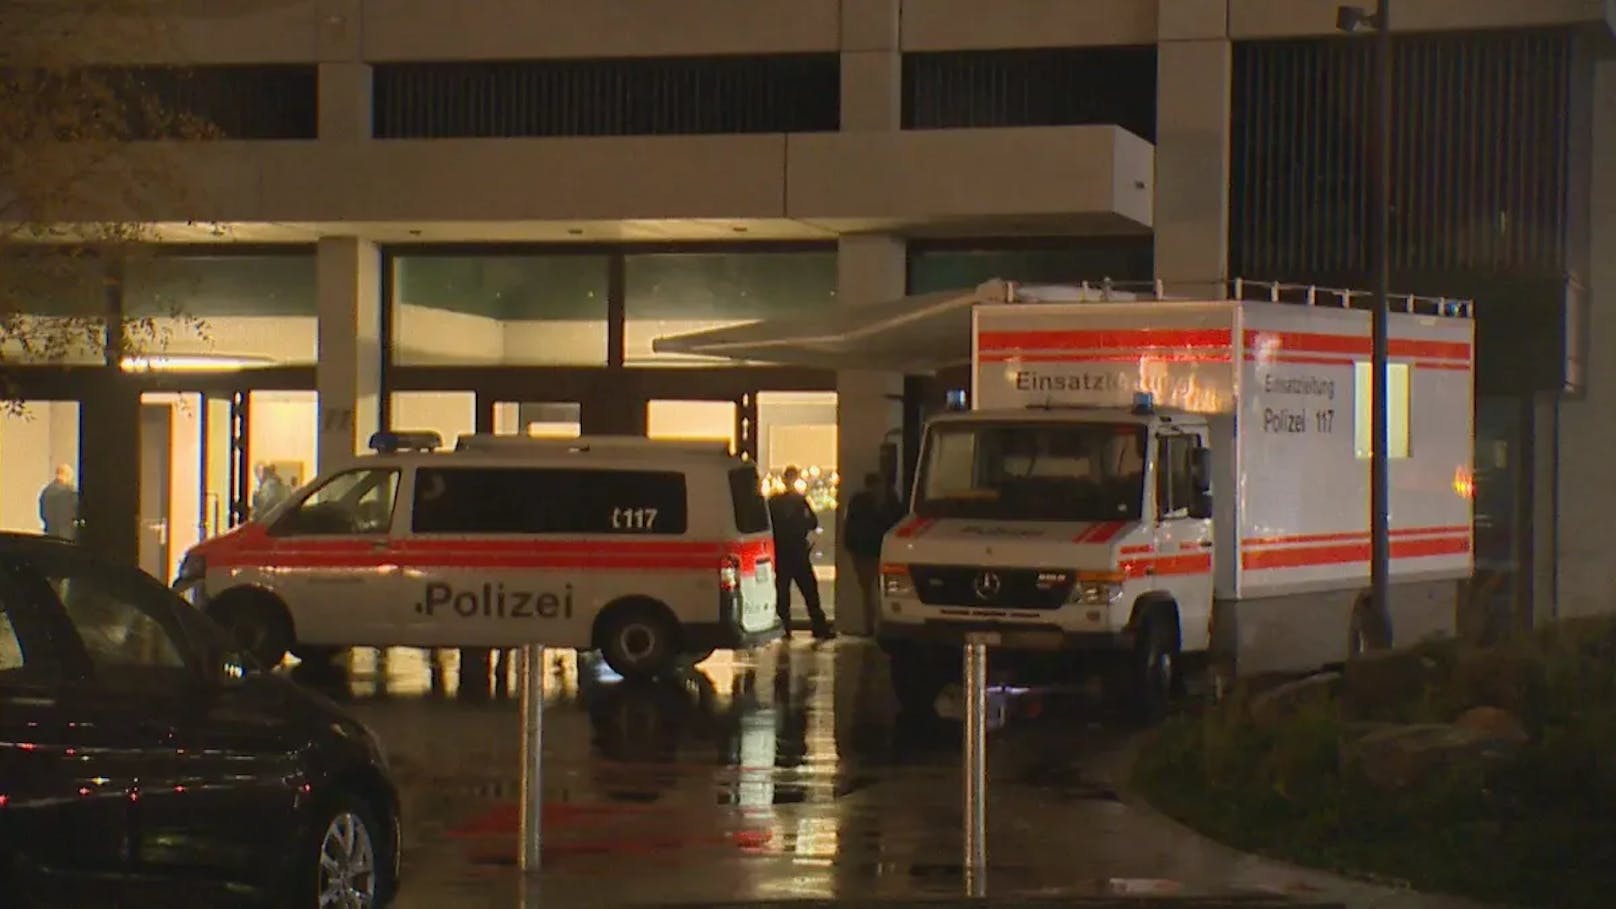 Die Polizei Zürich hat an der Baslerstrasse im Kreis 9 ein schwer verletztes Ehepaar in einer Wohnung gefunden.